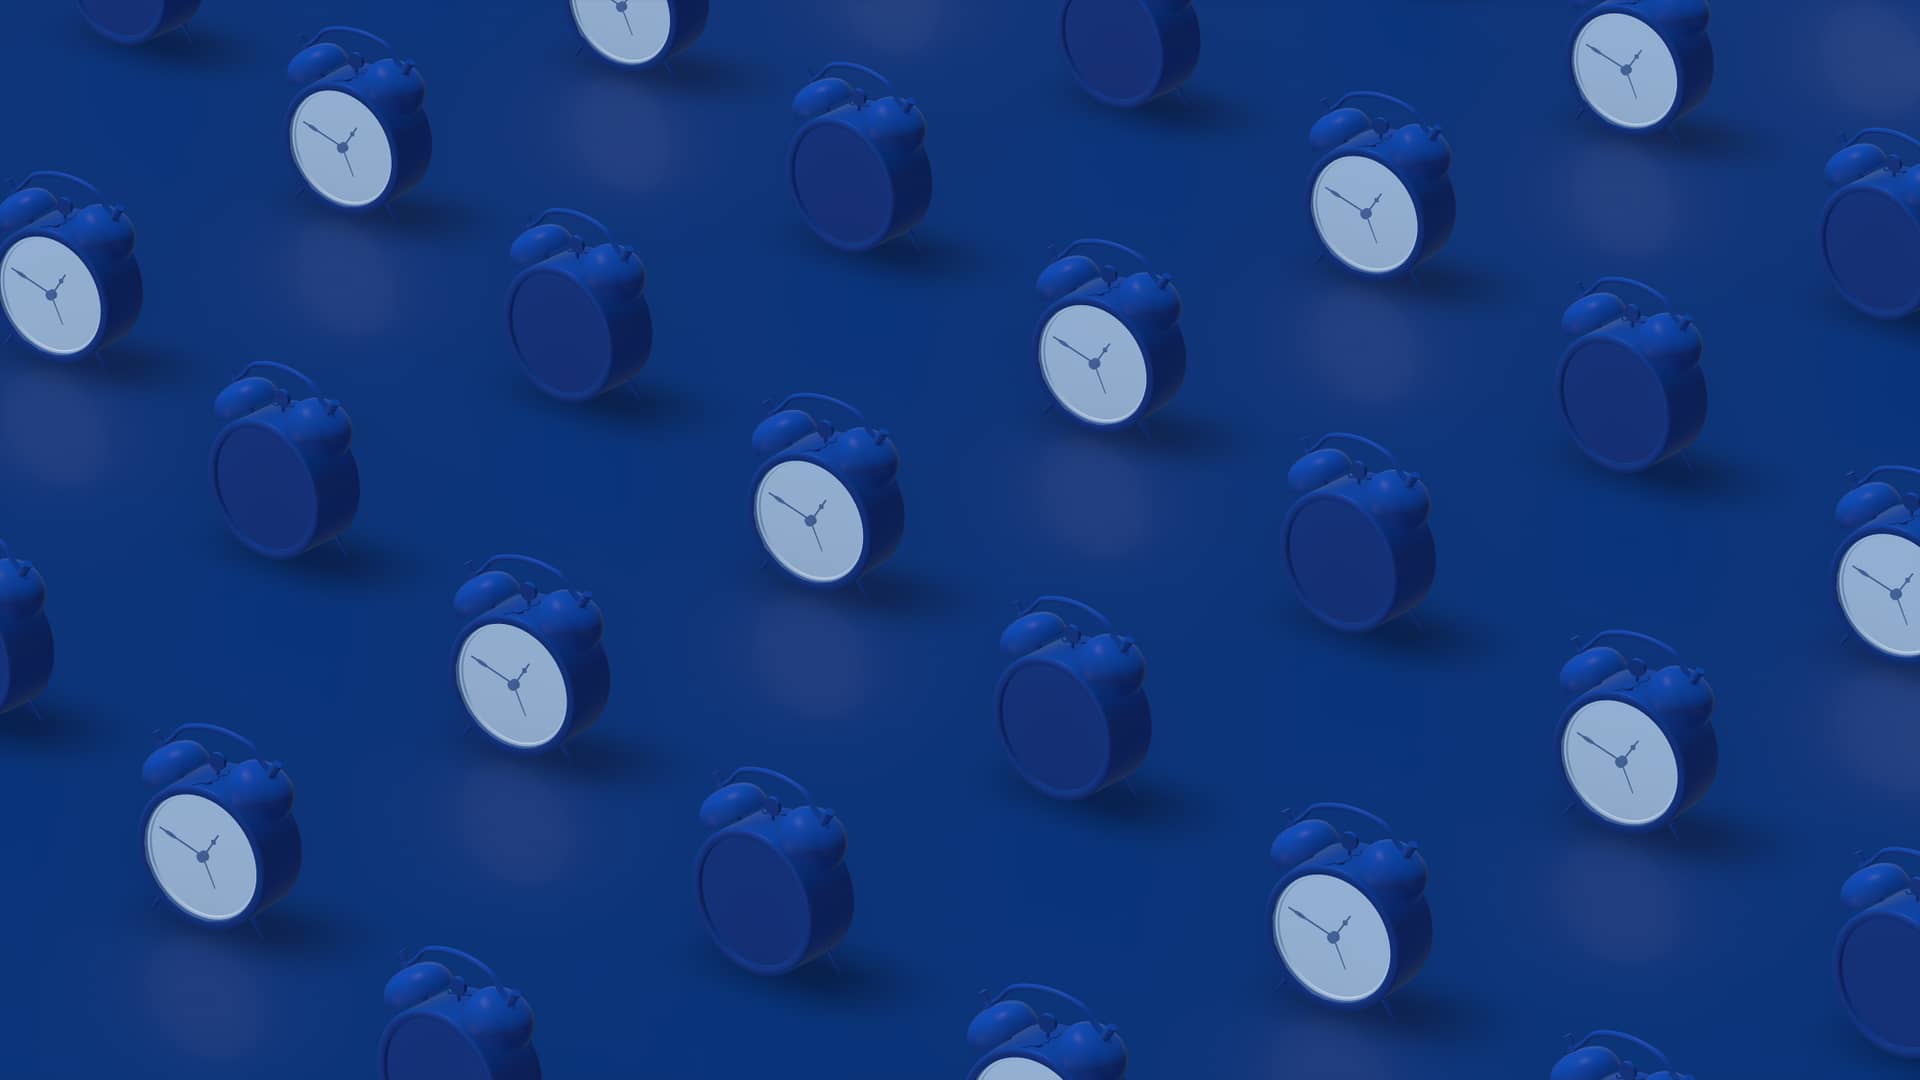 Hileras de relojes azules representan la permanencia del operador o2